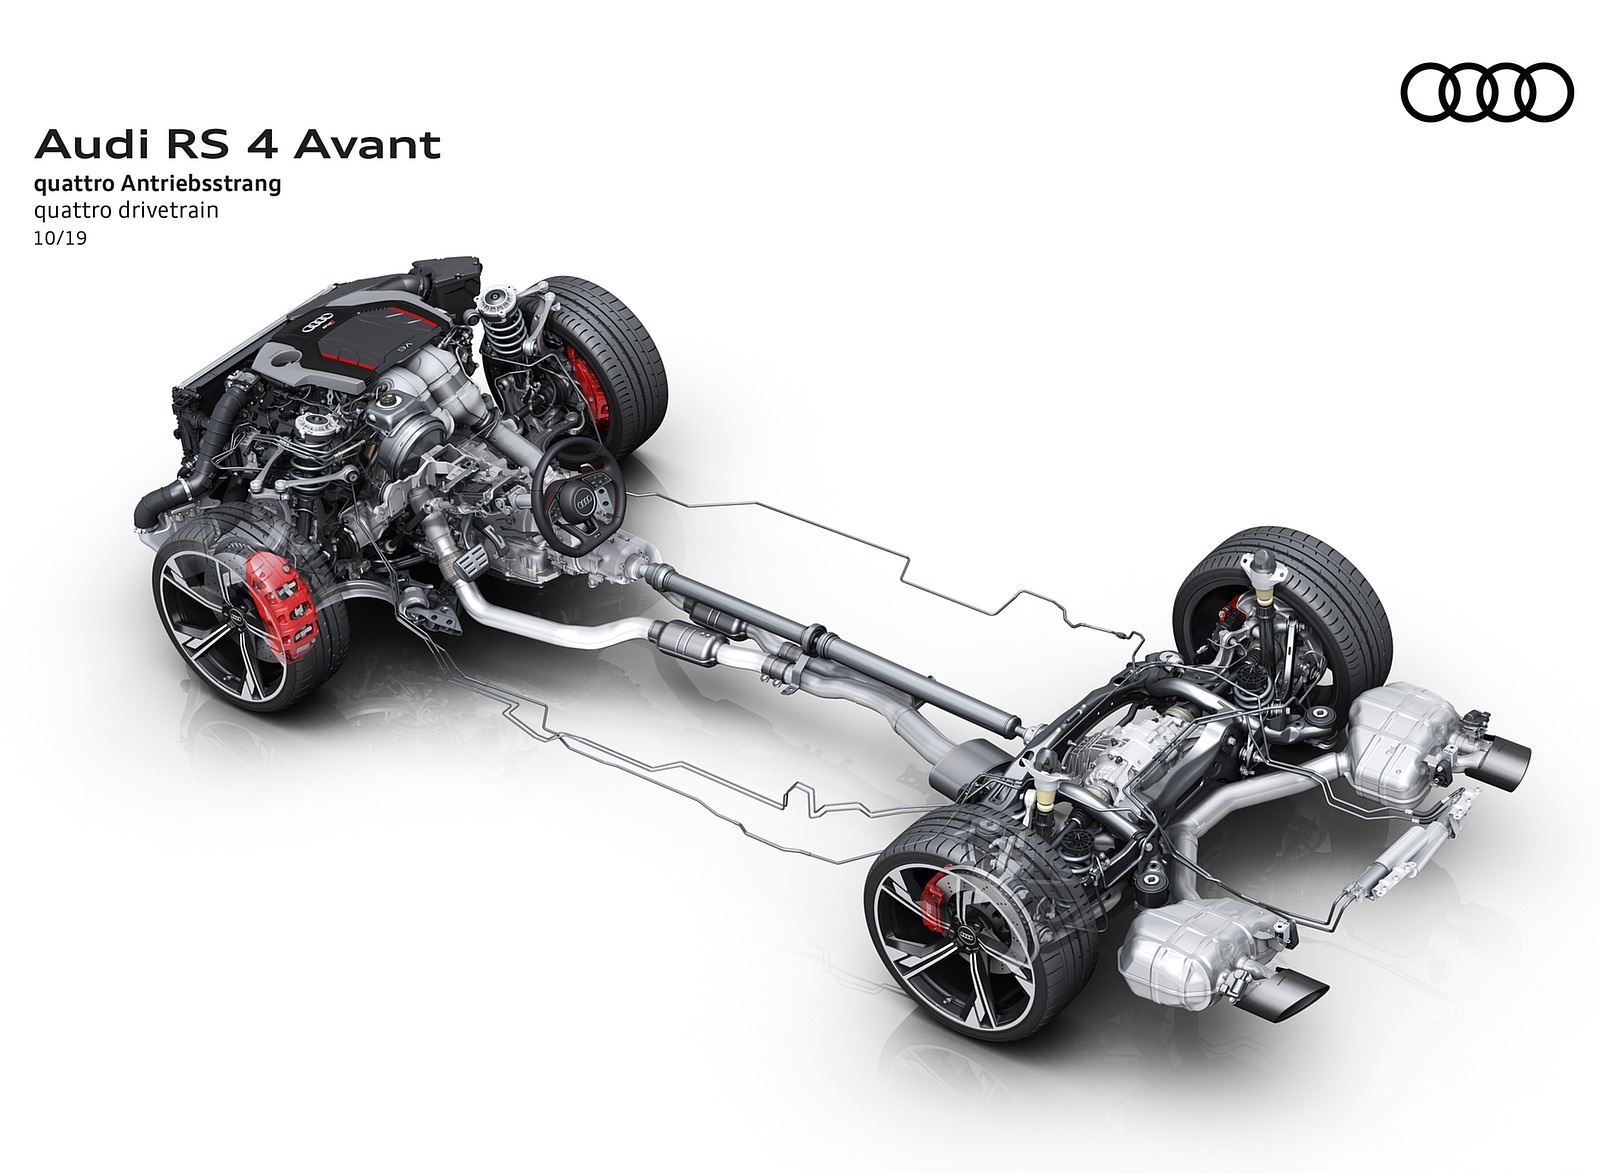 2020 Audi RS 4 Avant quattro drivetrain Wallpapers #91 of 98